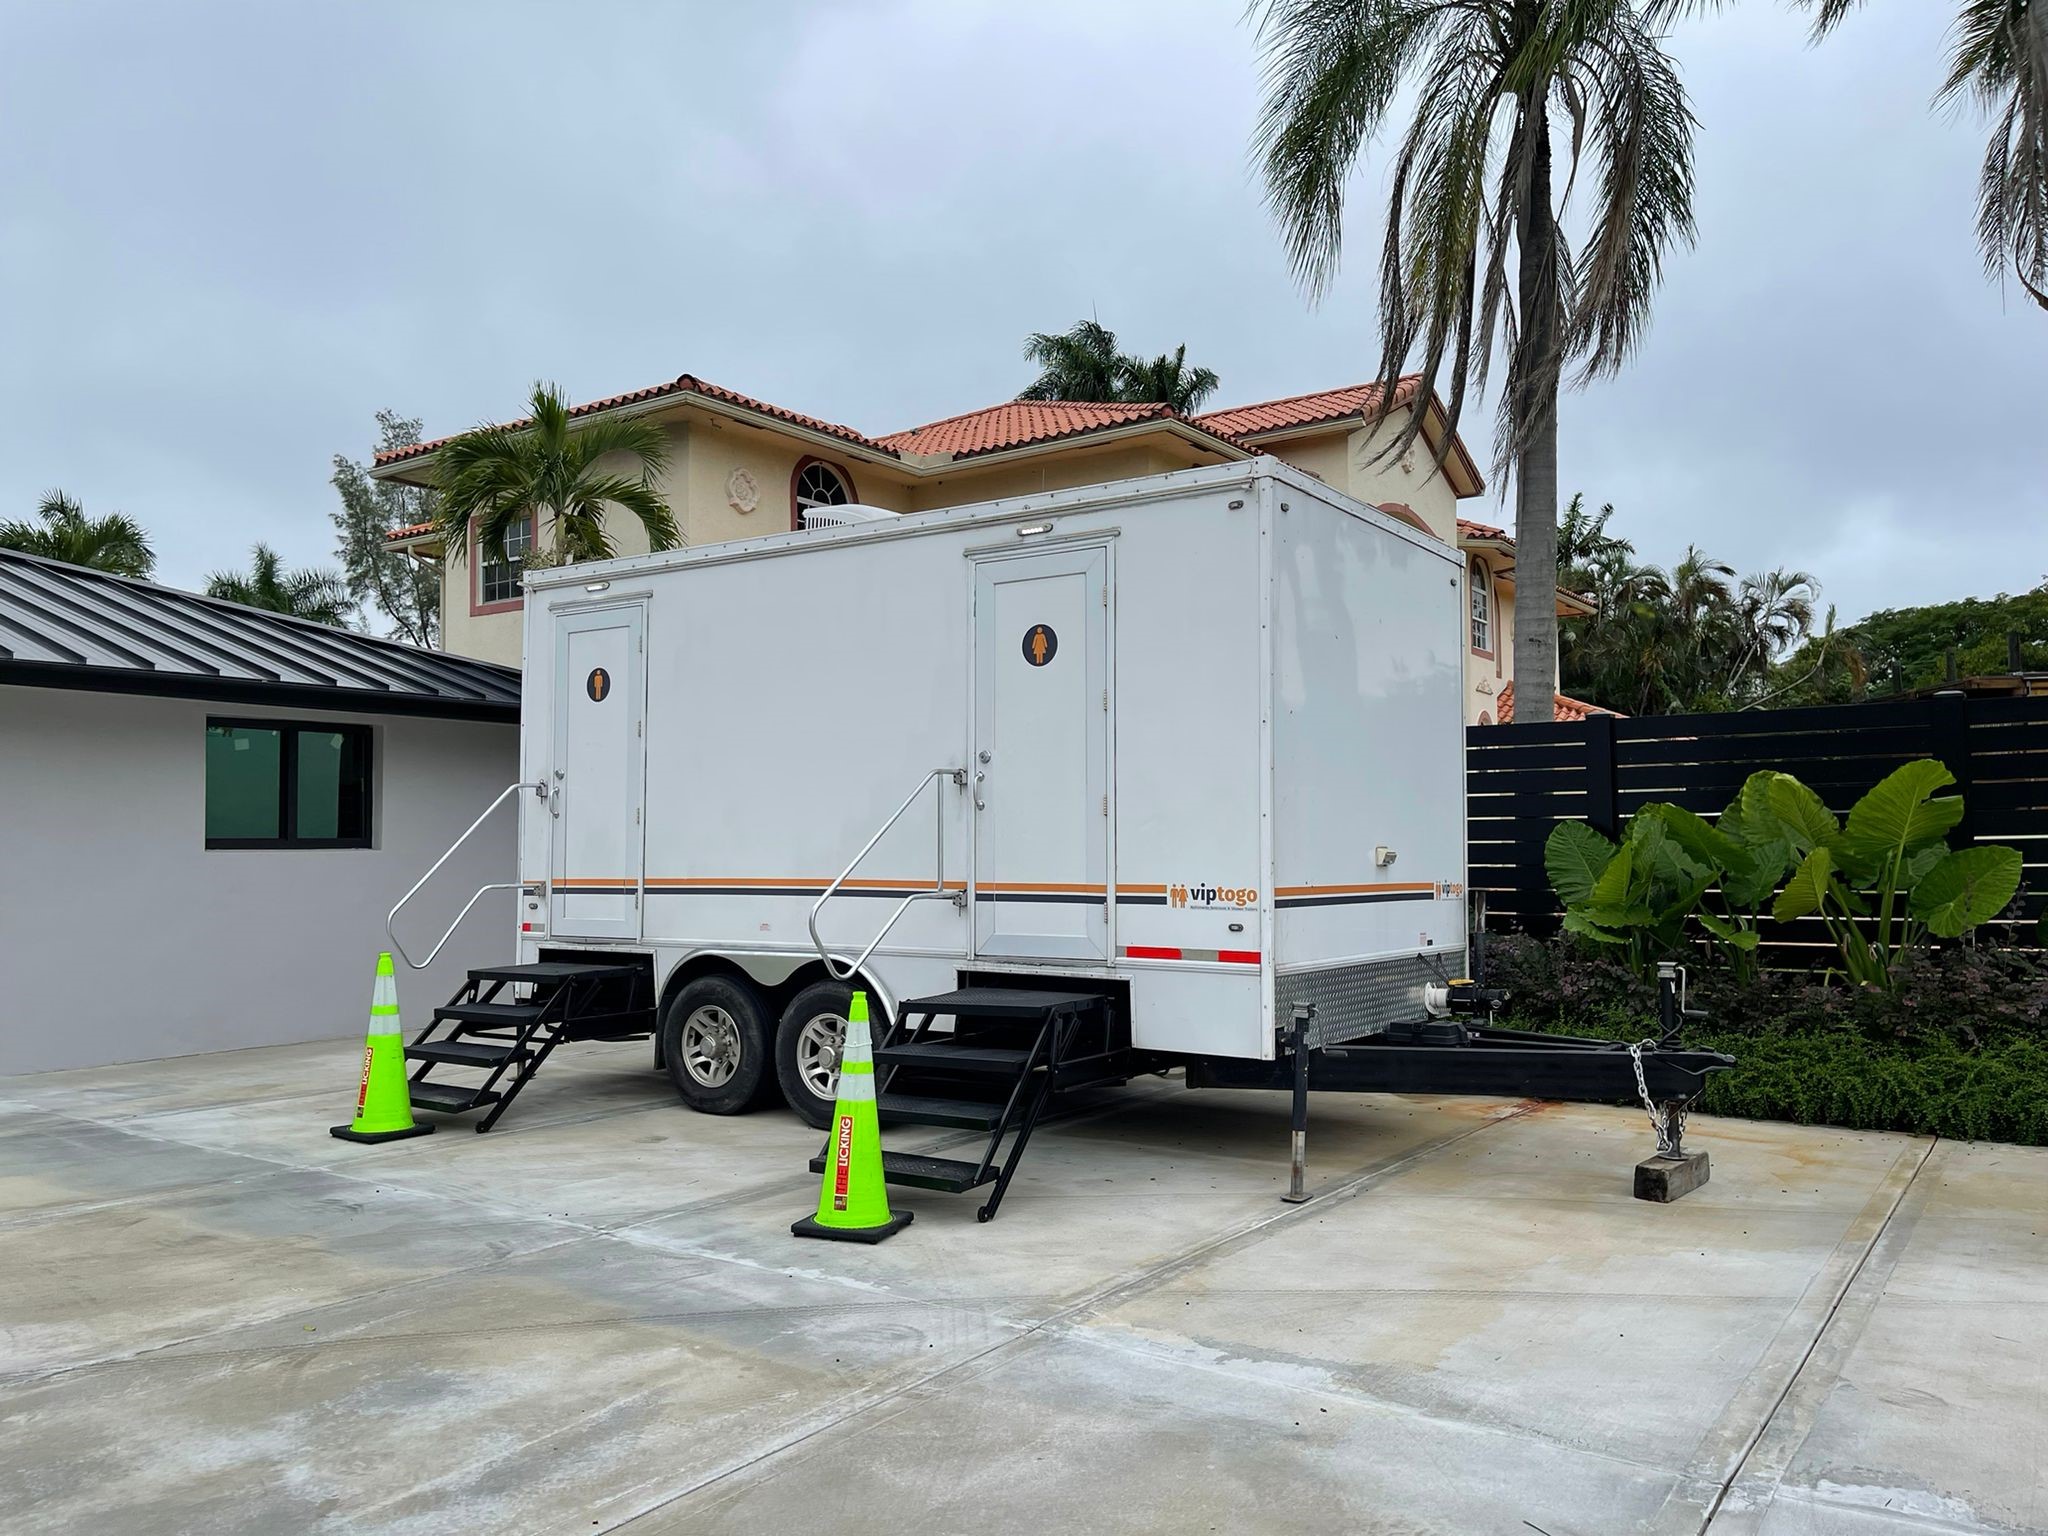 2-station portable restroom trailer at Florida event